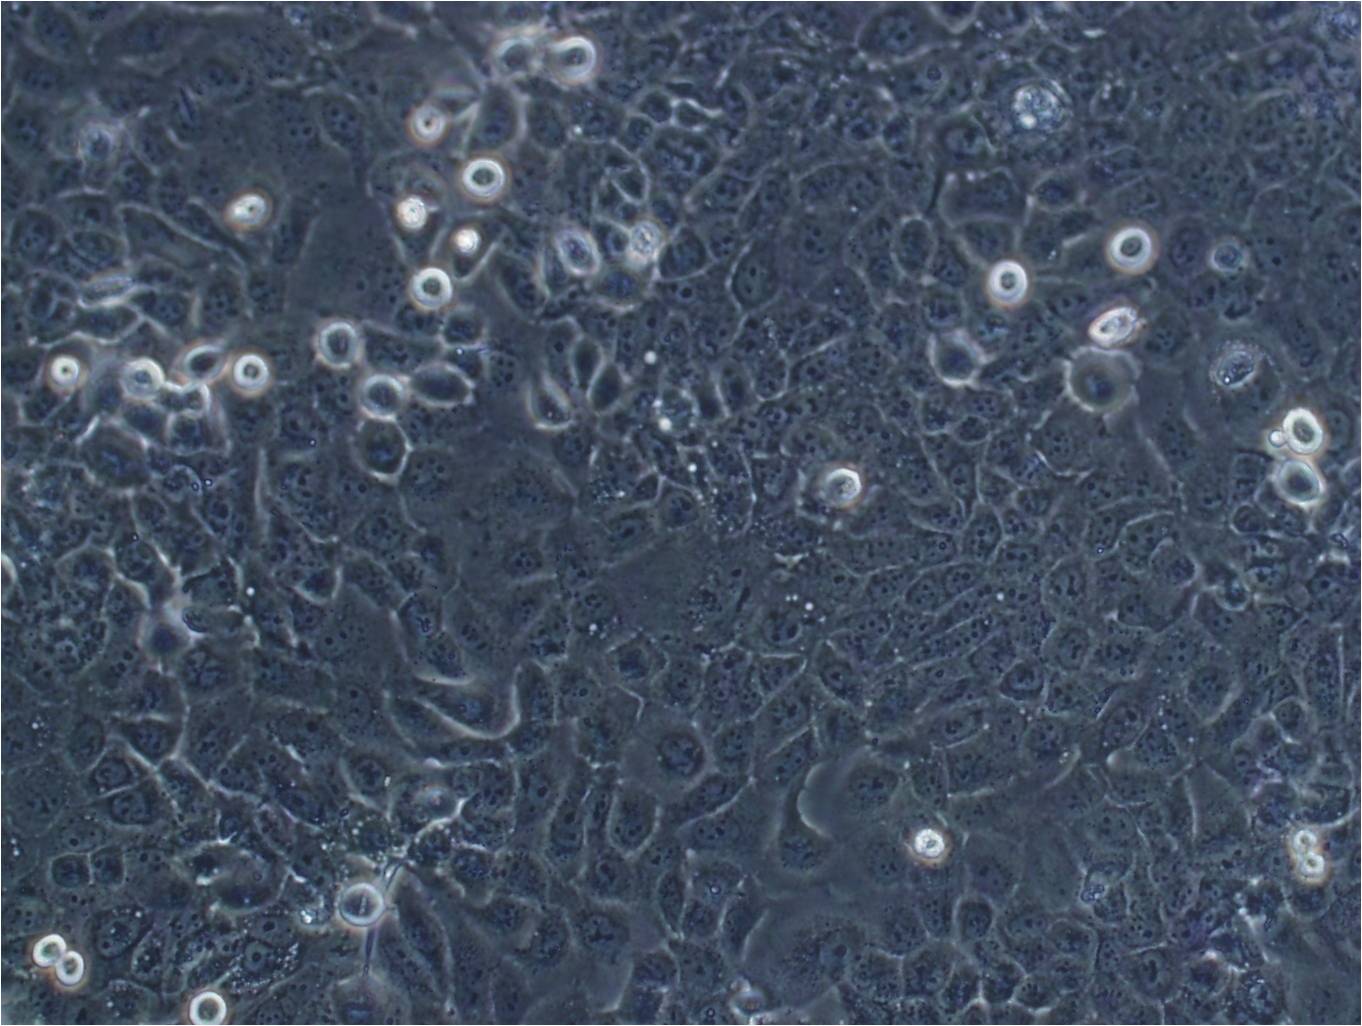 MUG-Chor1 Cells|人骶骨脊索瘤克隆细胞(包送STR鉴定报告),MUG-Chor1 Cells